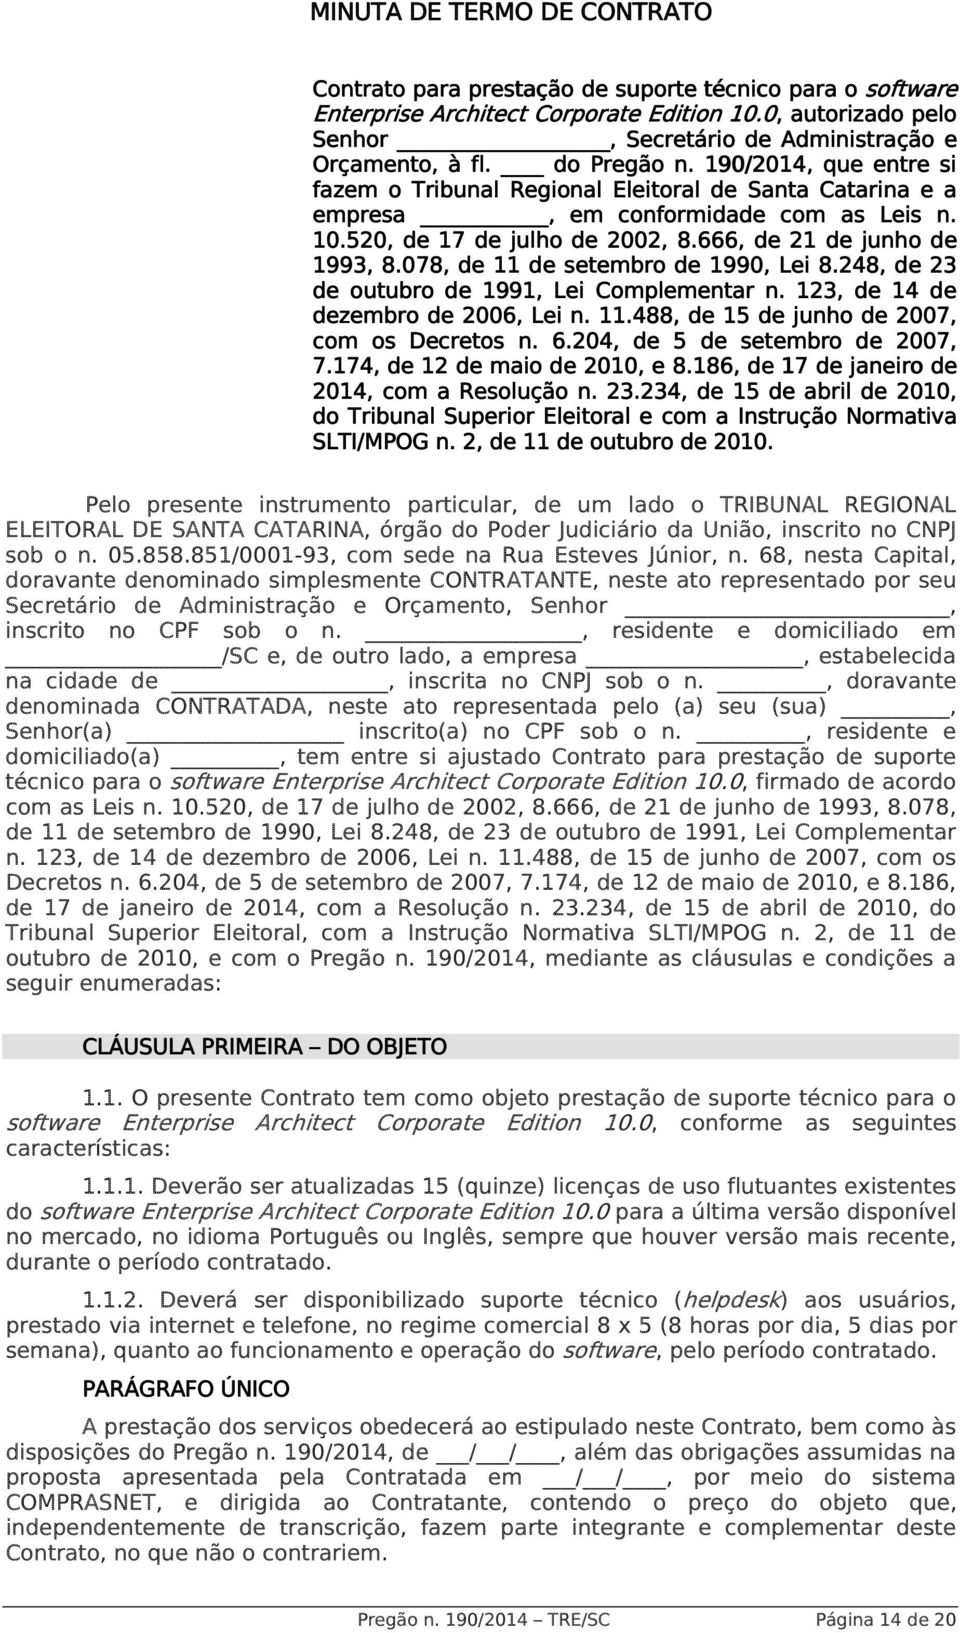 190/2014,, que entre si fazem o Tribunal Regional Eleitoral de Santa Catarina e a empresa, em conformidade com as Leis n. 10.520, de 17 de julho de 2002, 8.666, de 21 de junho de 1993, 8.